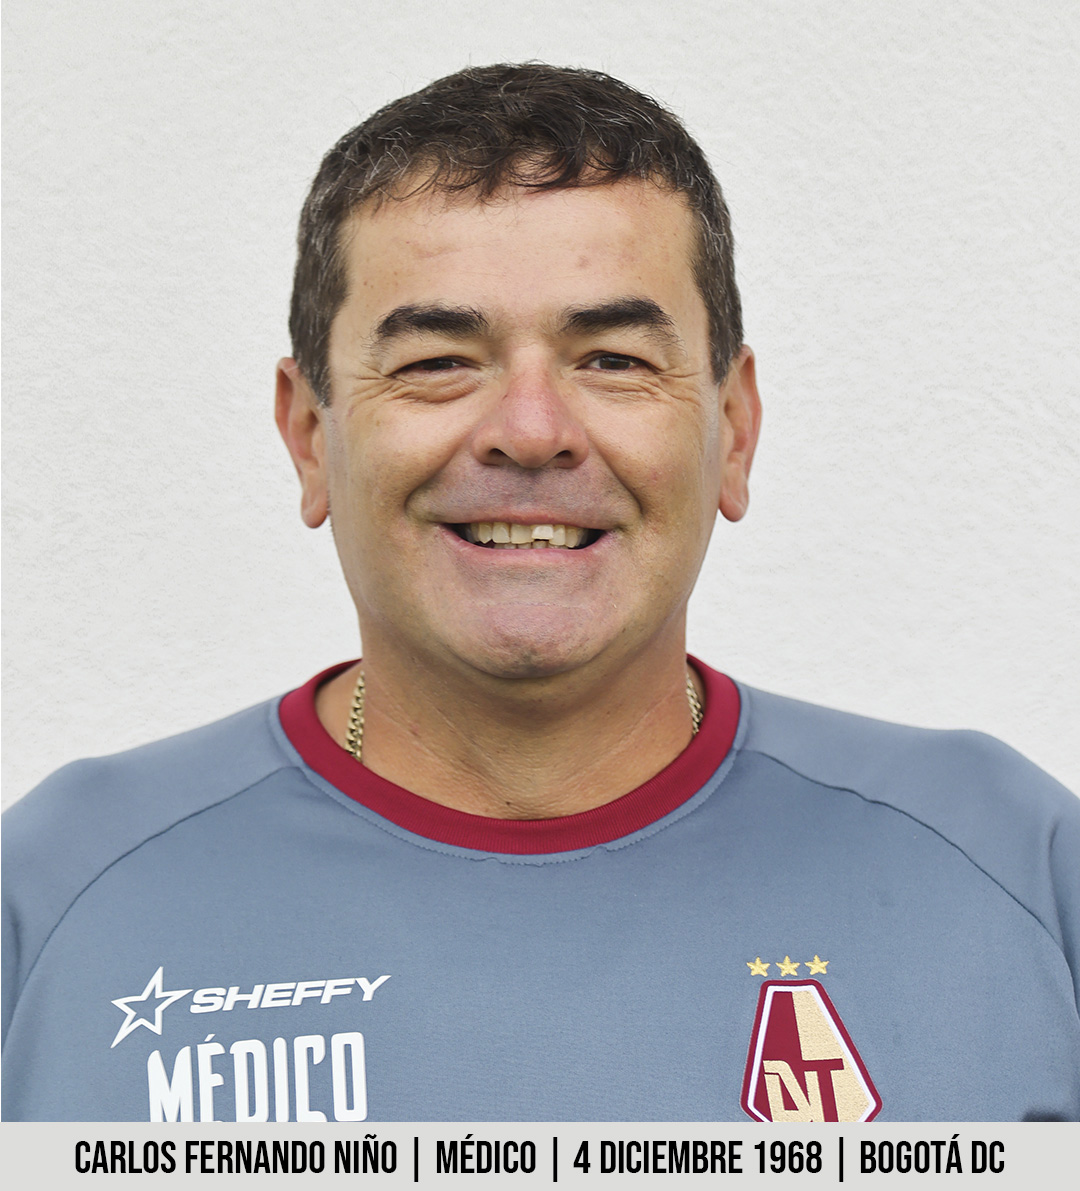 40. Carlos Fernando Niño